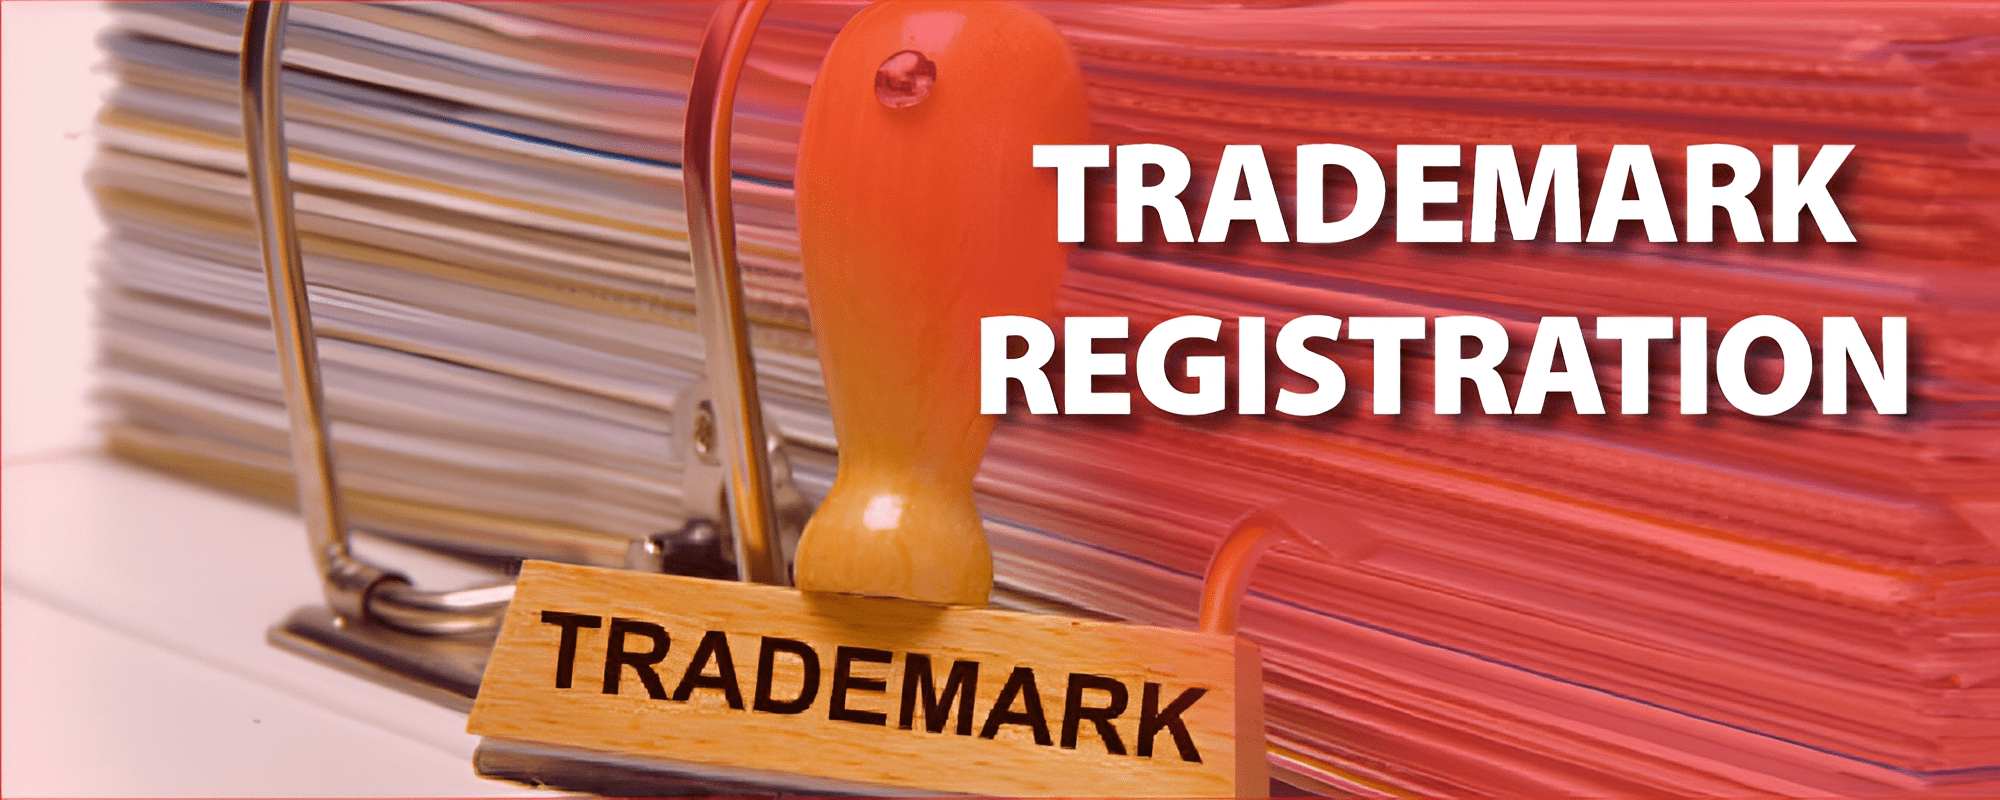 Trademark Registration in Rwanda